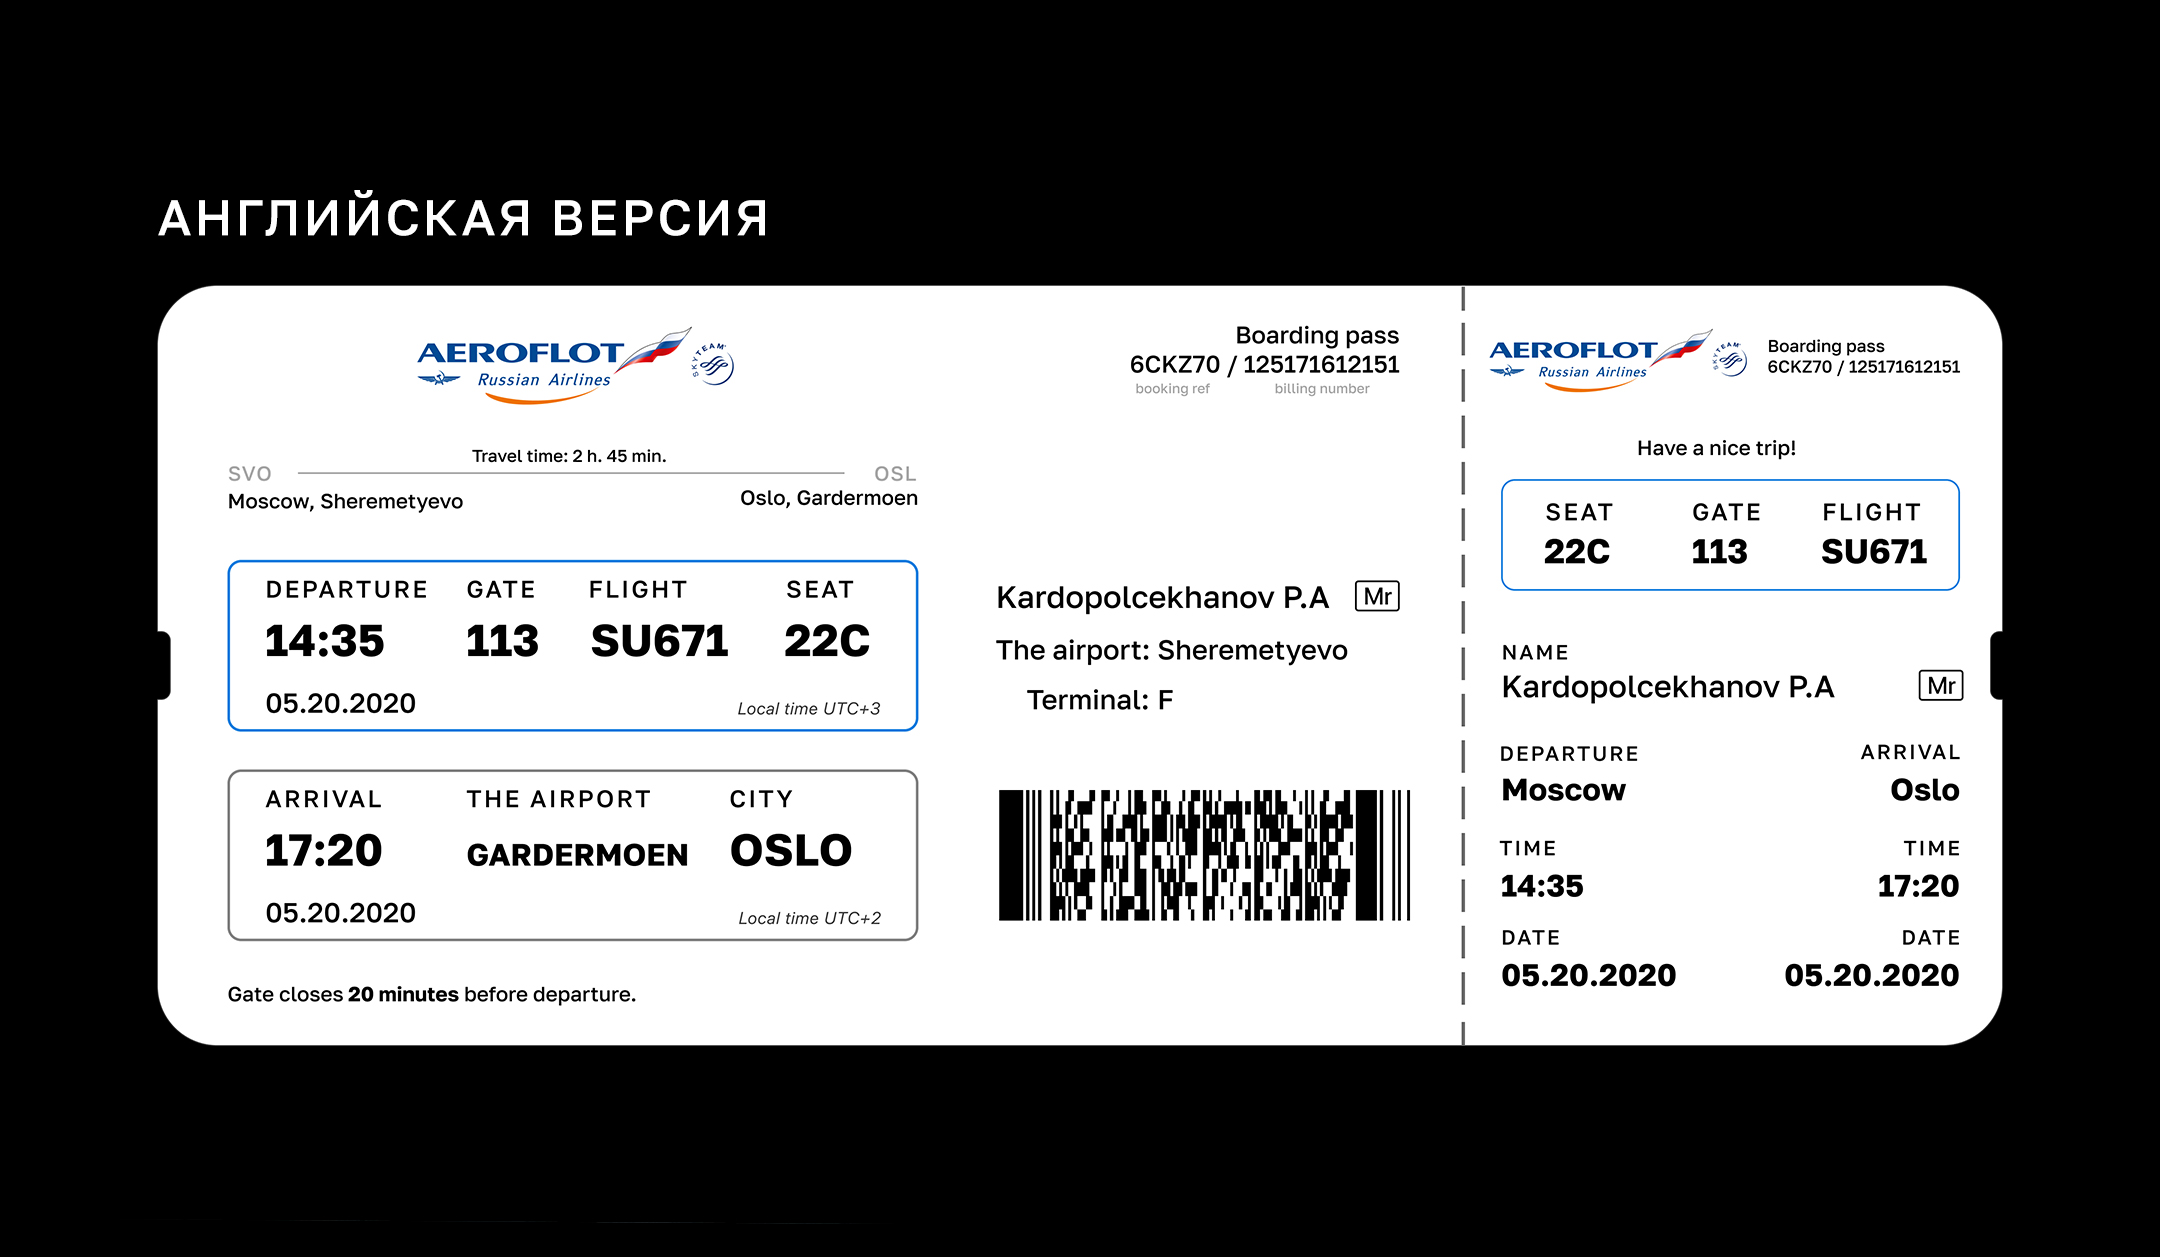 Авиабилеты до петербурга аэрофлот расписание самолетов минск ташкент цена билета